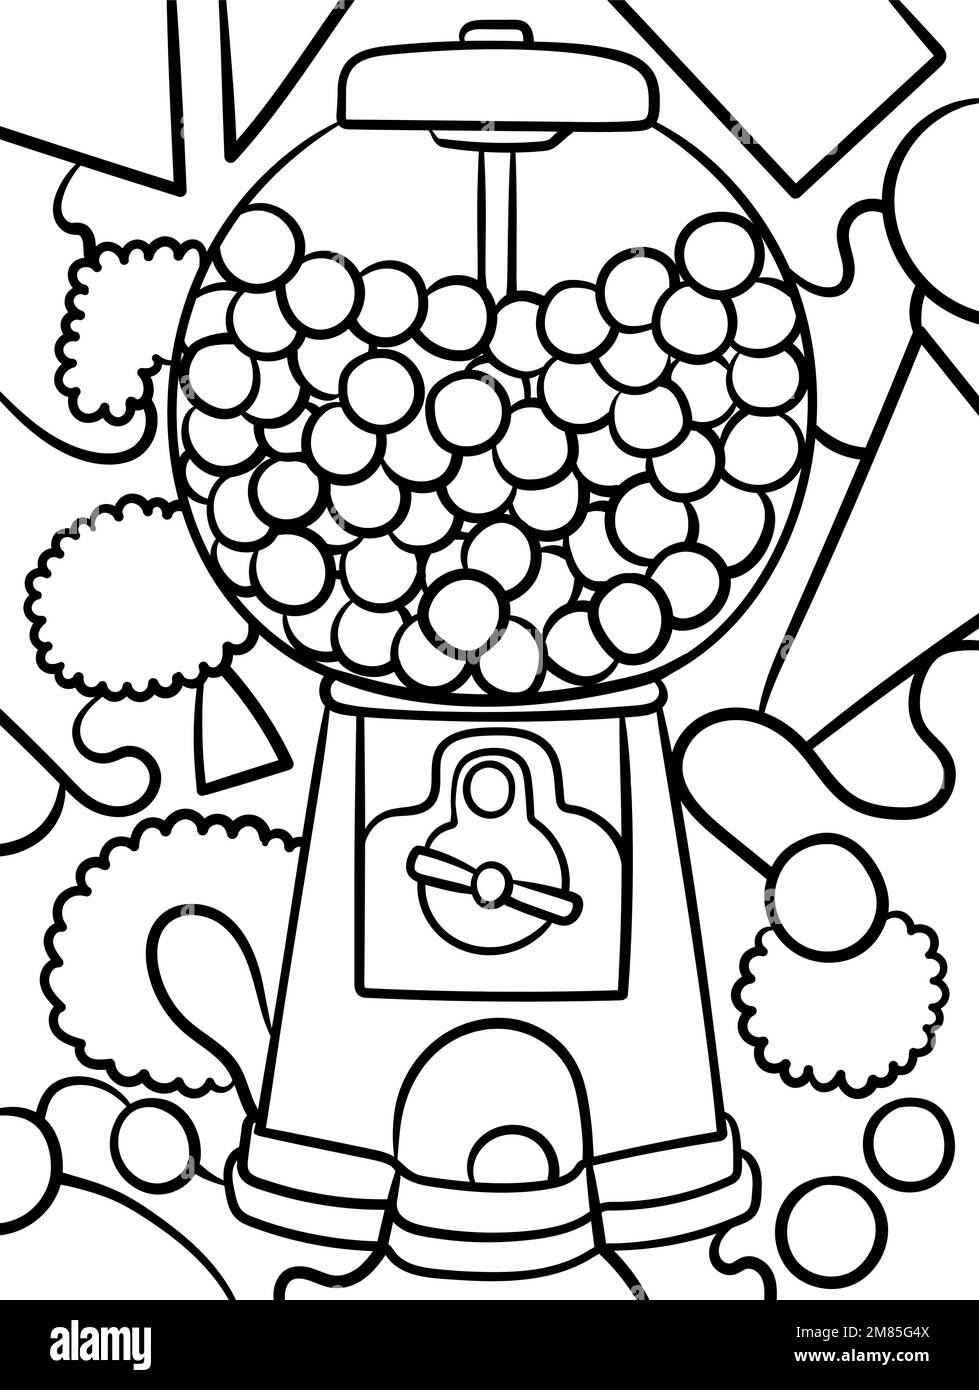 Máquina Expendedora De Gumball Con Chicles De Colores Aislados Sobre Fondo  Blanco Fotos, retratos, imágenes y fotografía de archivo libres de derecho.  Image 38706416